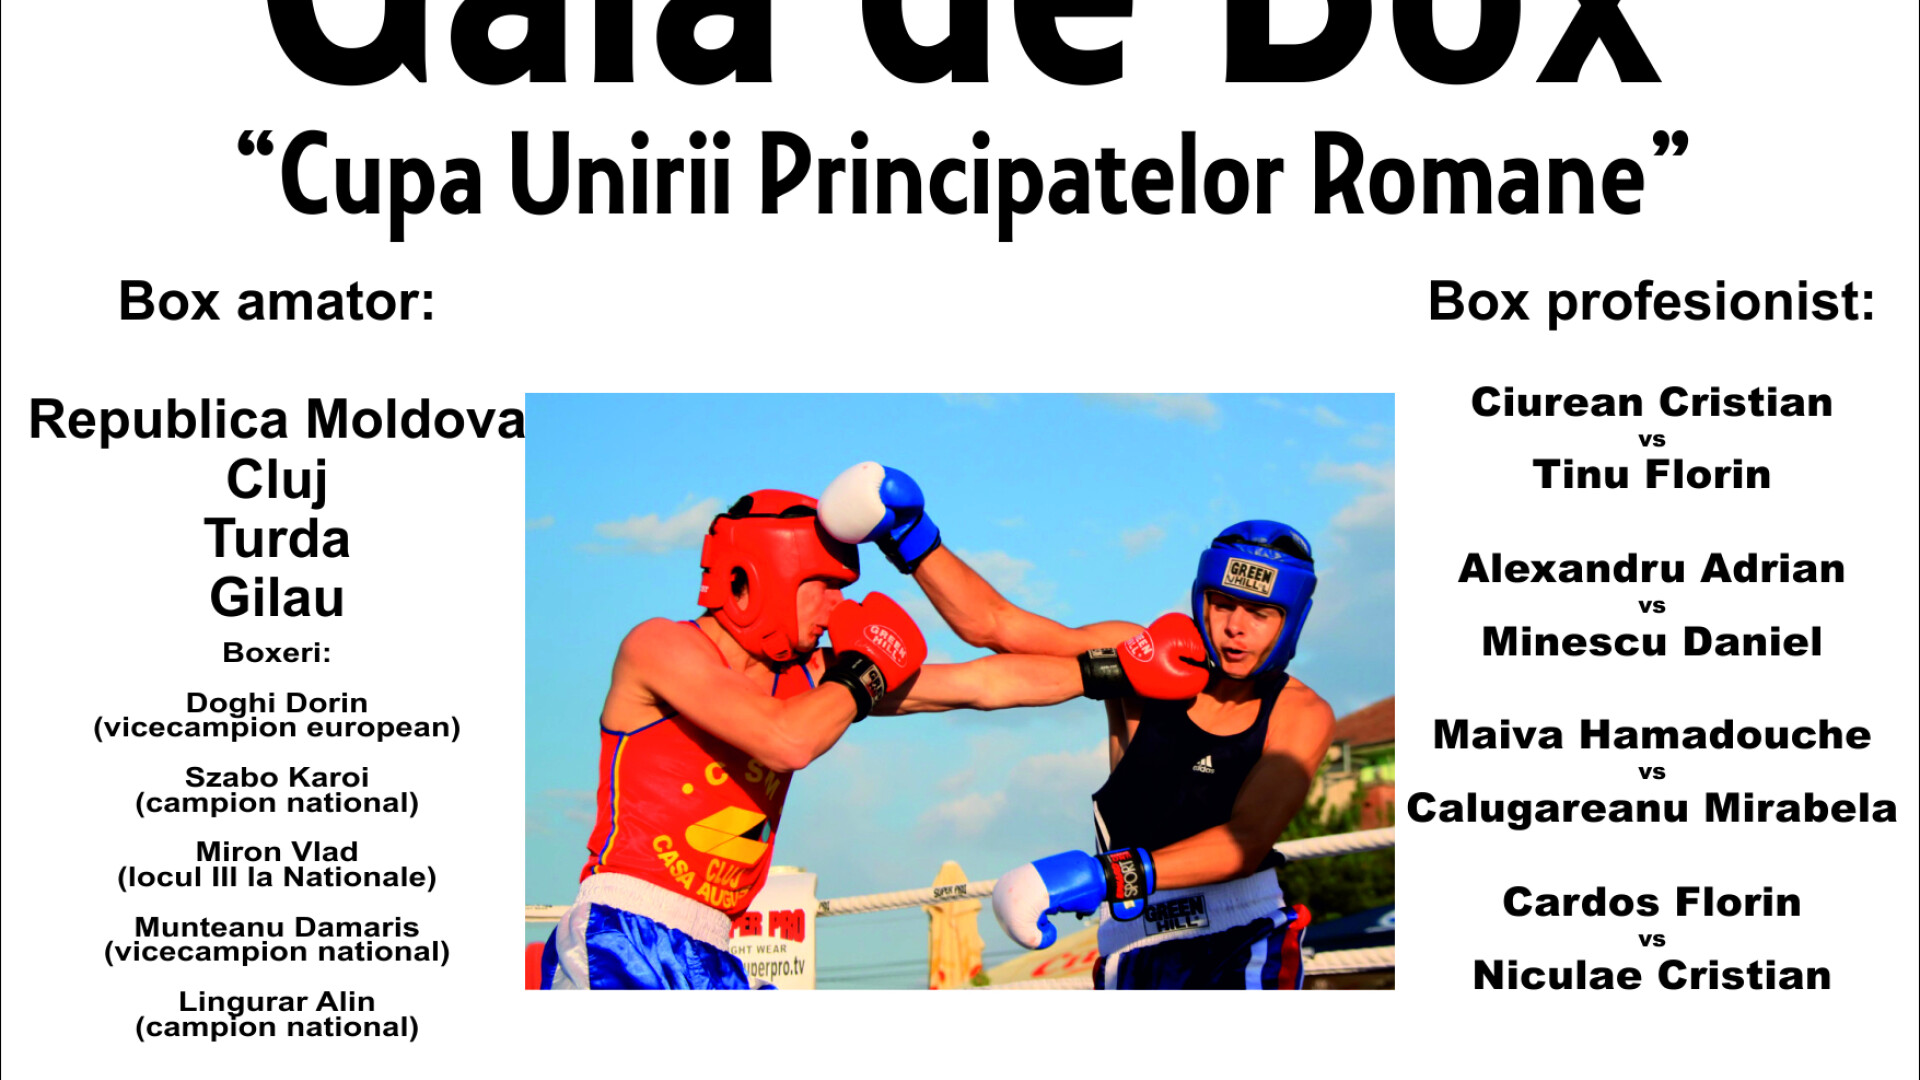 Gala de Box - Cupa Unirii Principatelor Romane, a ajuns la cea de-a II-a editie